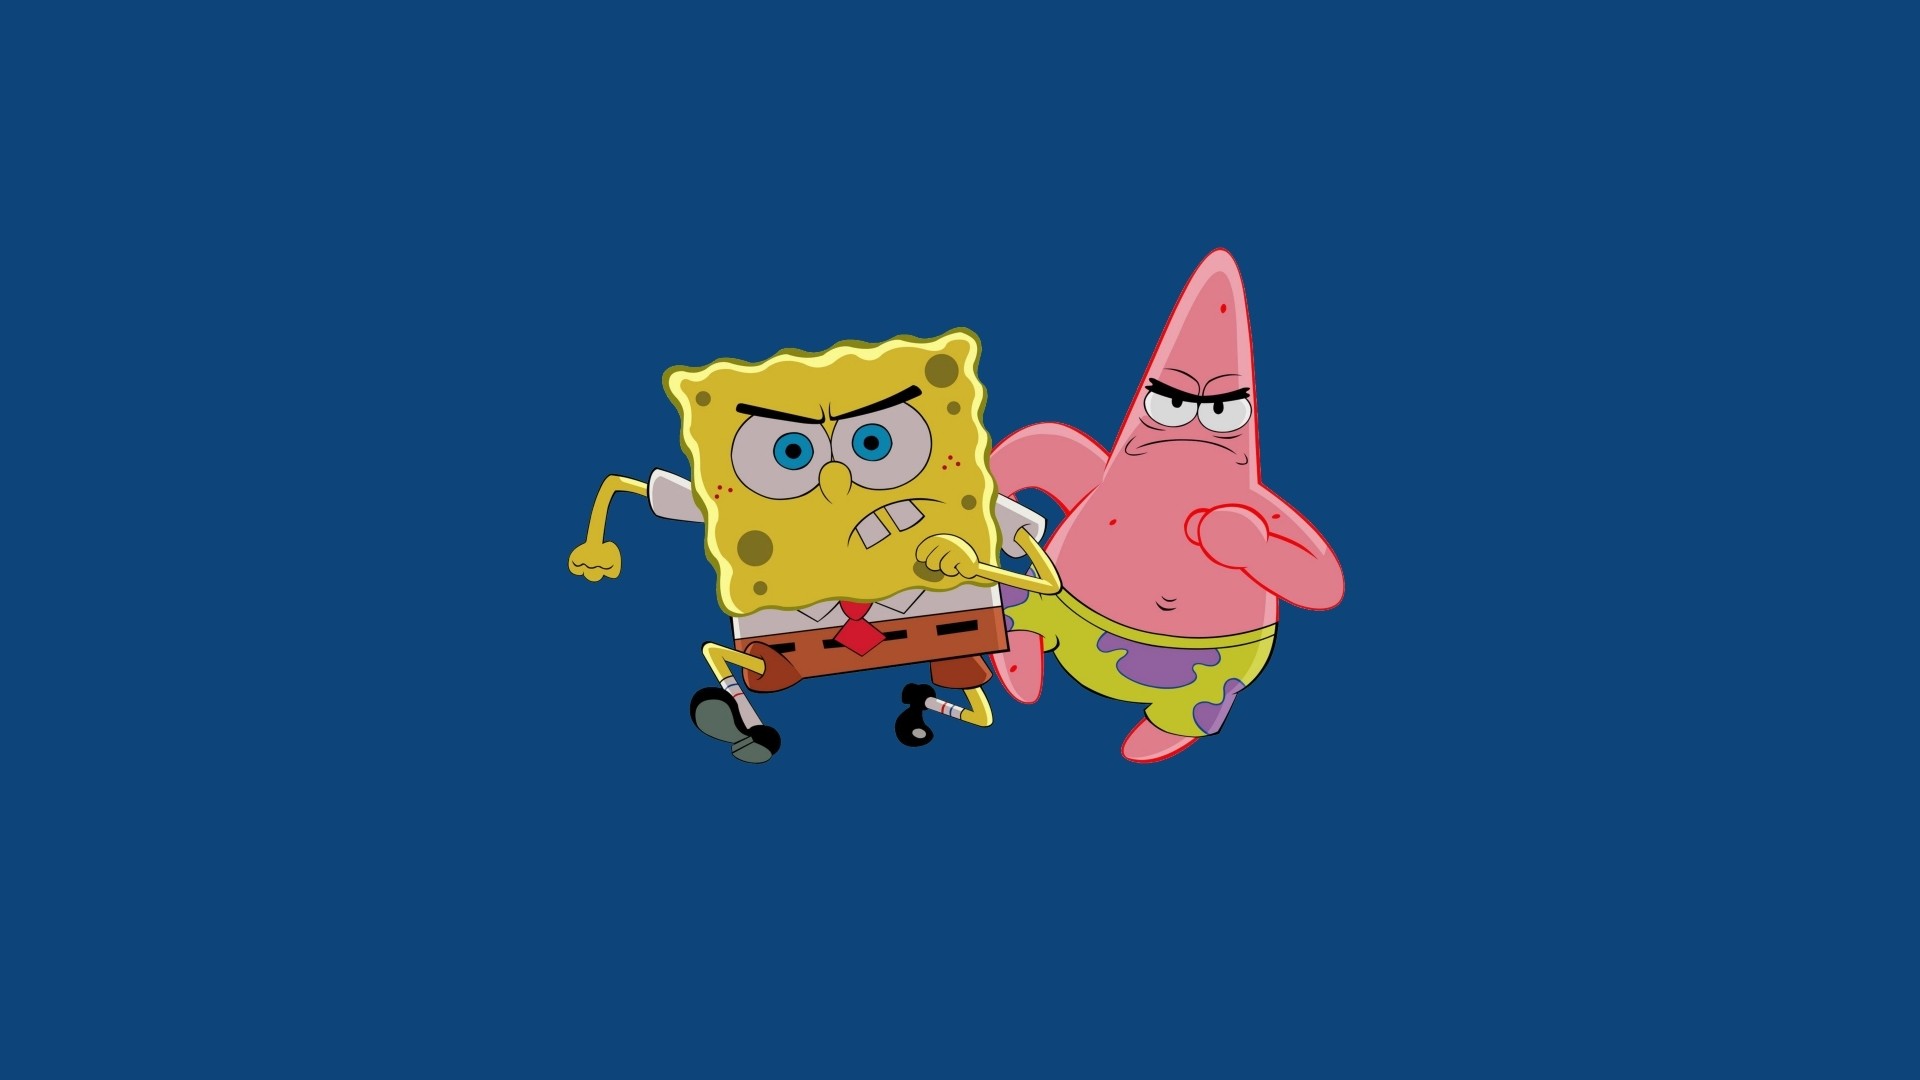 SpongeBob and Patrick simple wallpaper